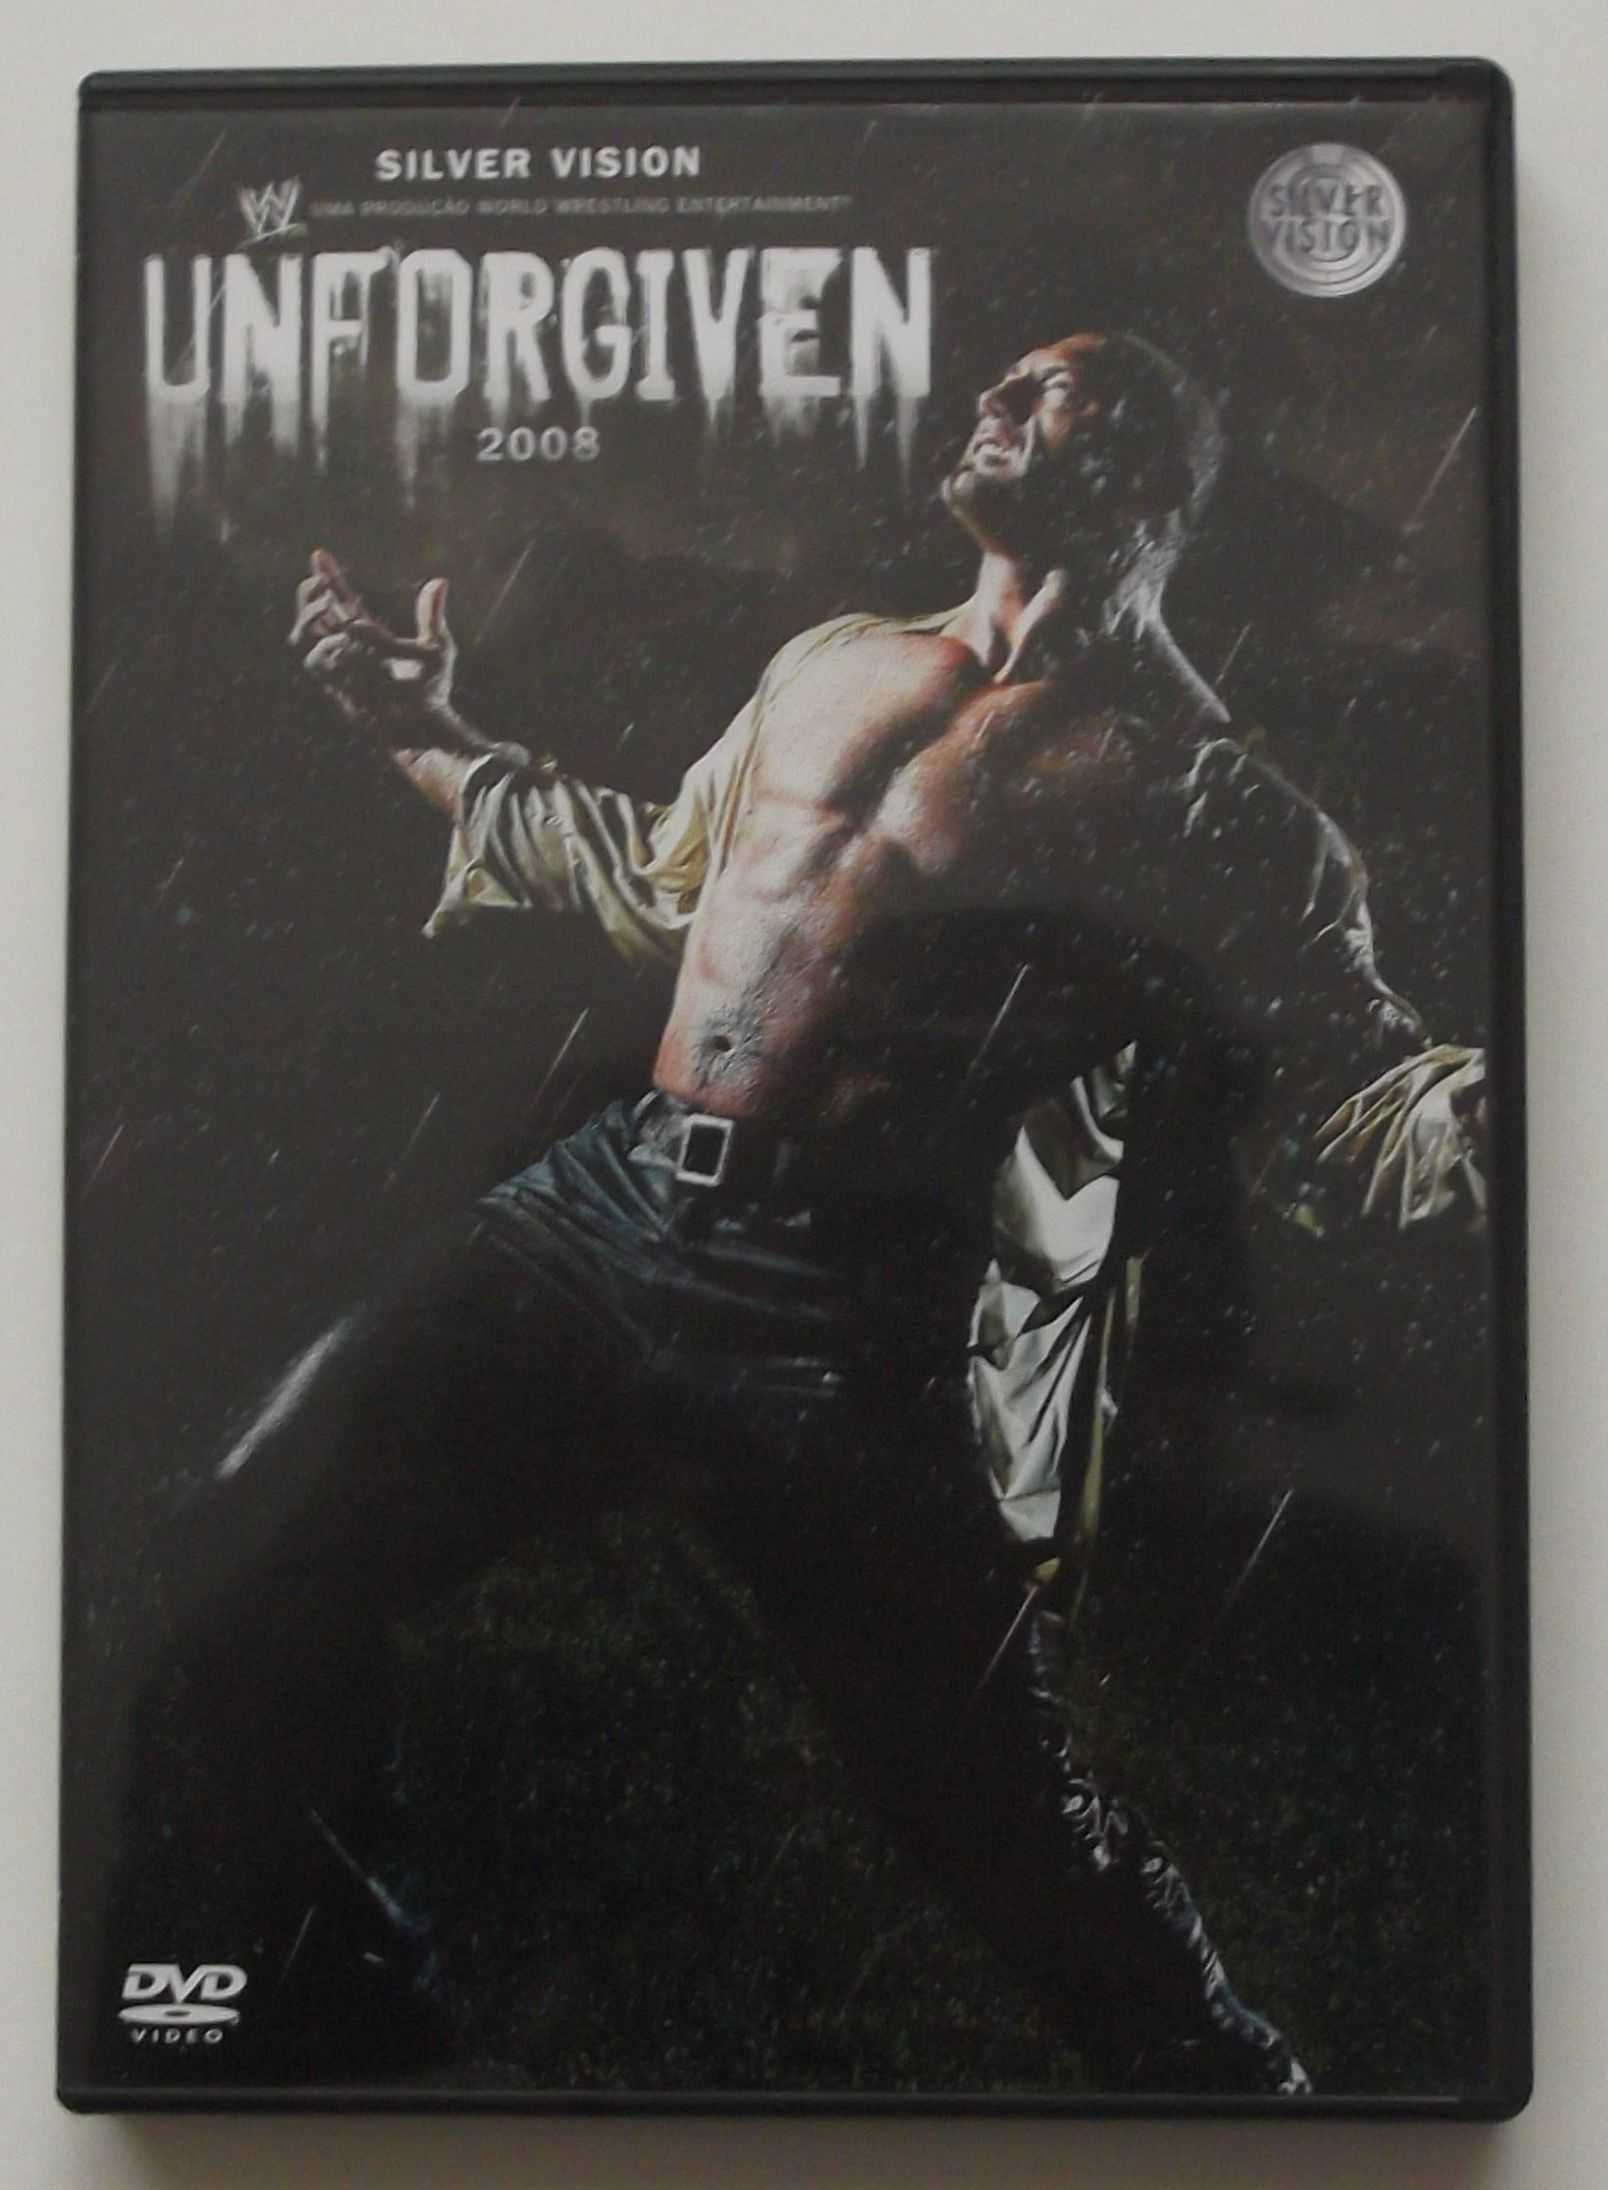 DVD de Wrestling/WWE Unforgiven 2008